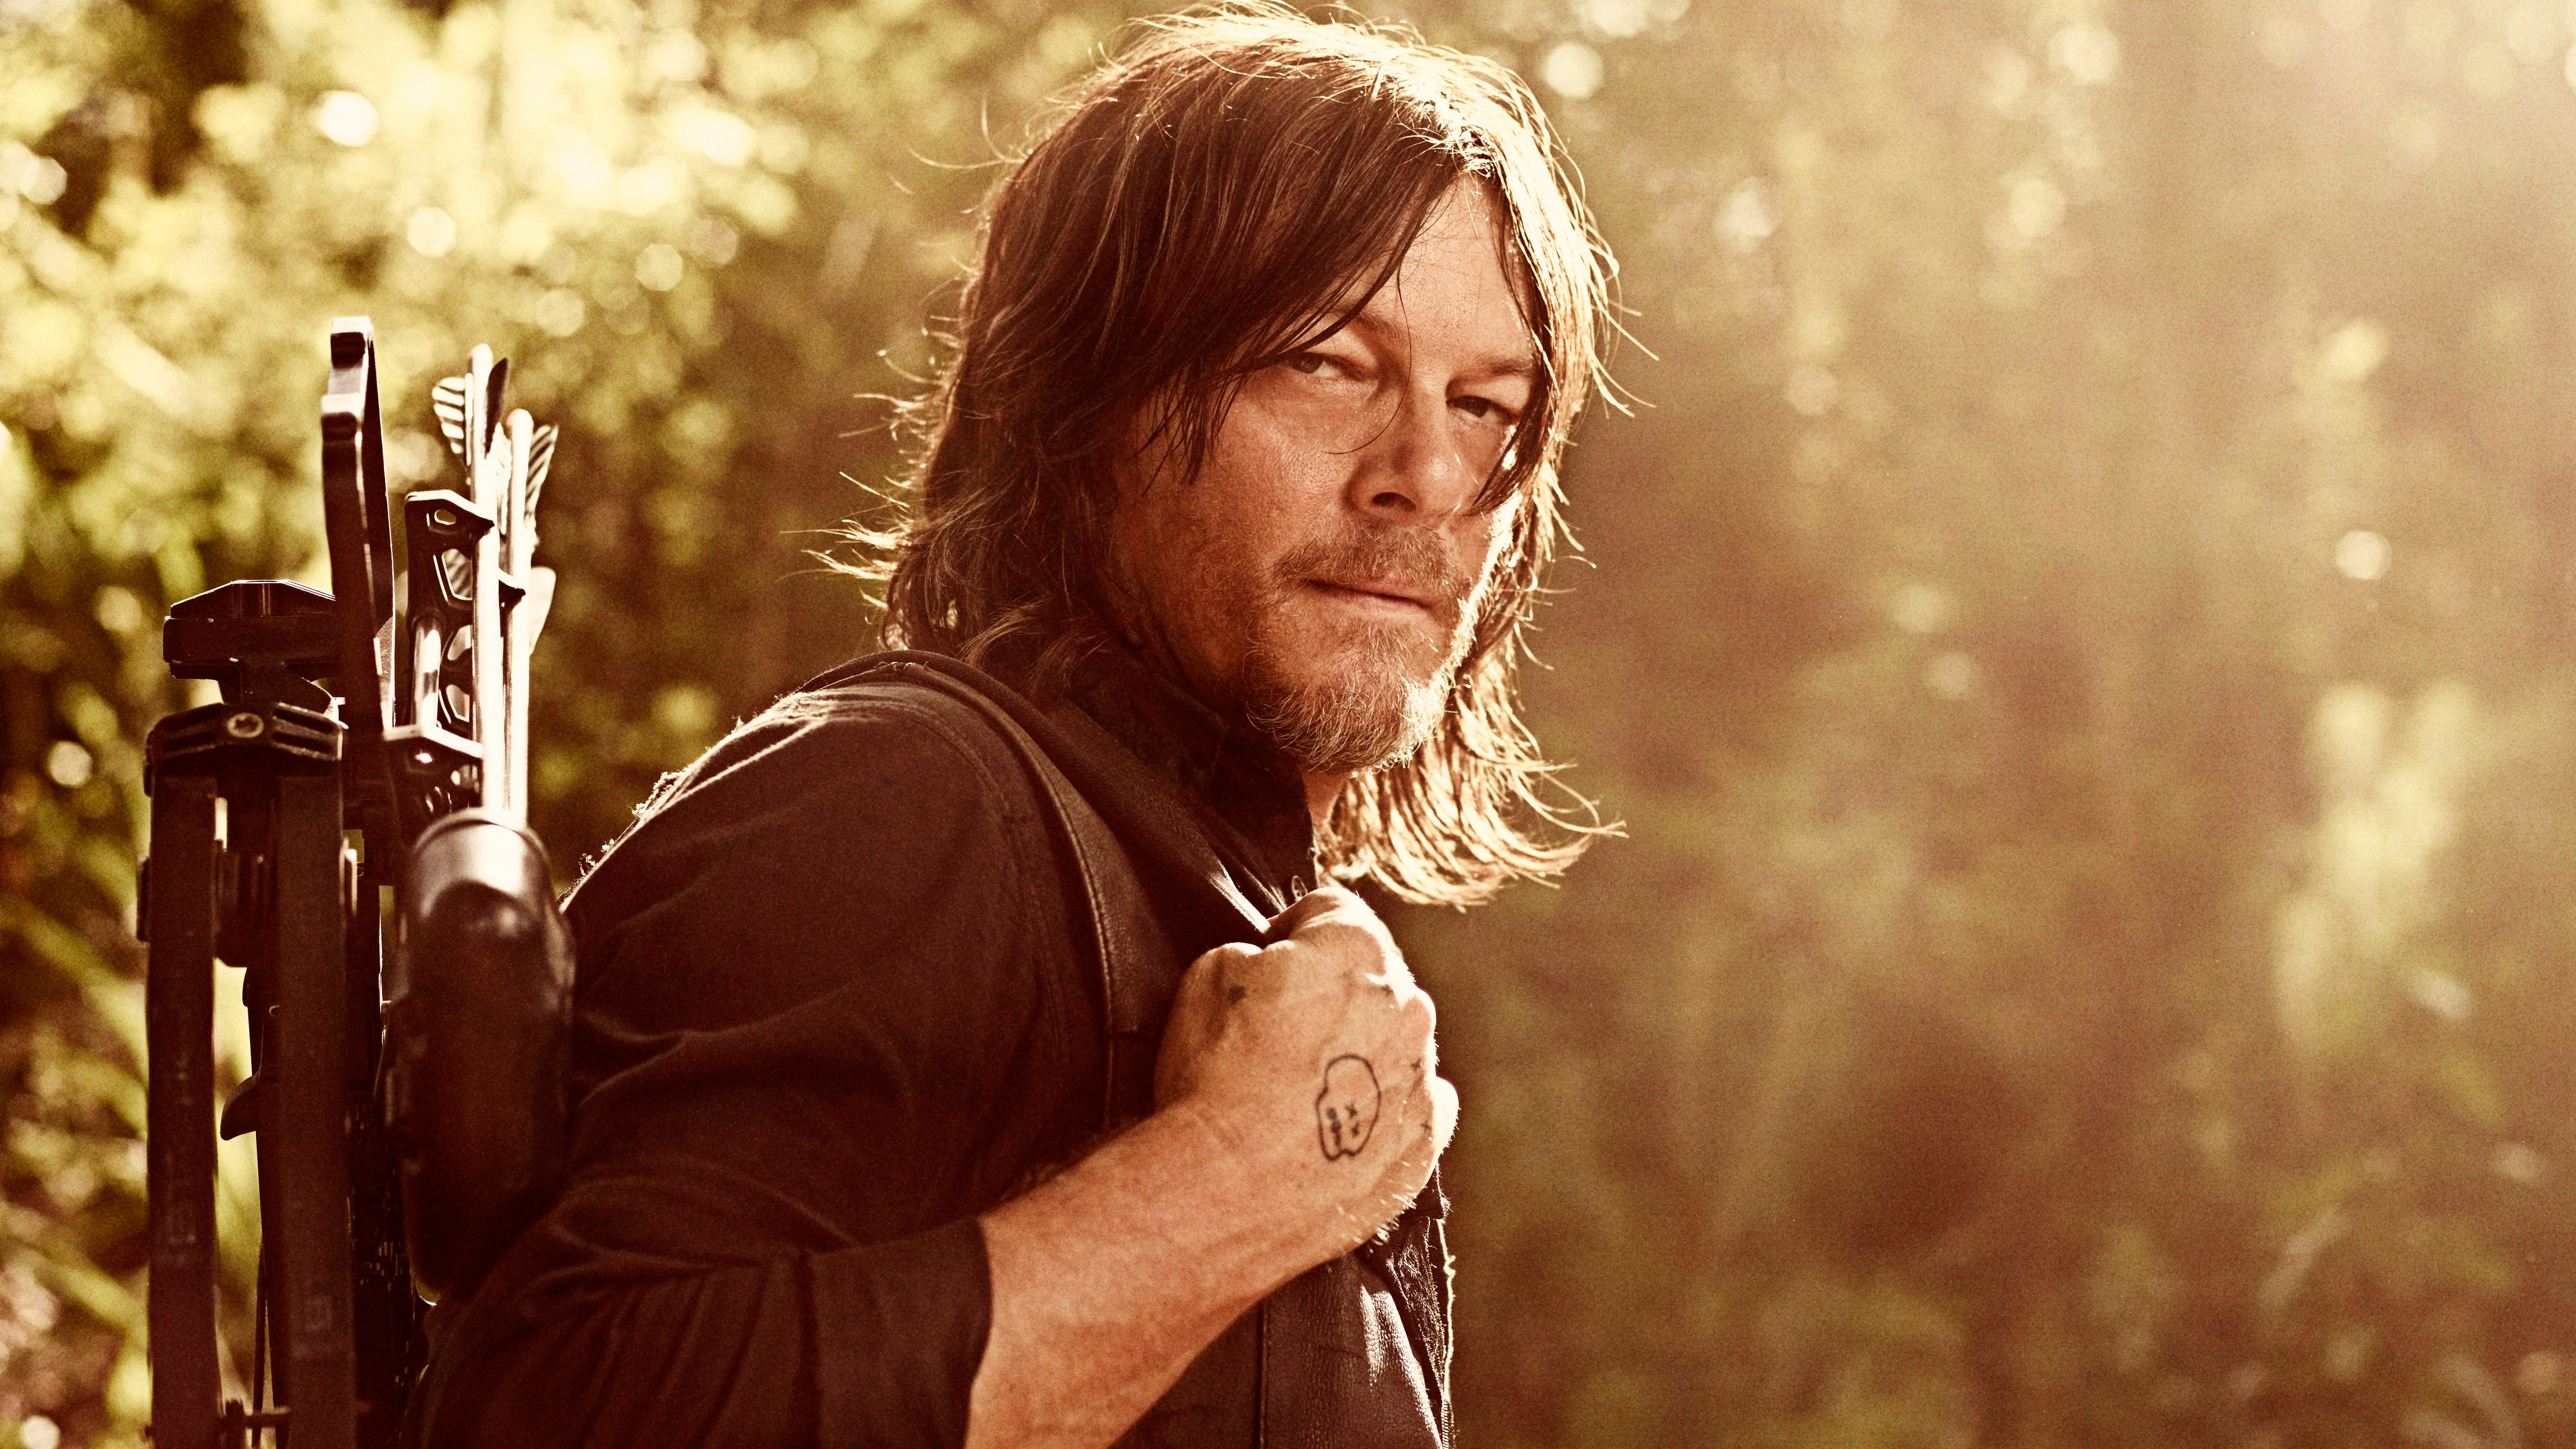 Daryl Walking Dead - HD Wallpaper 